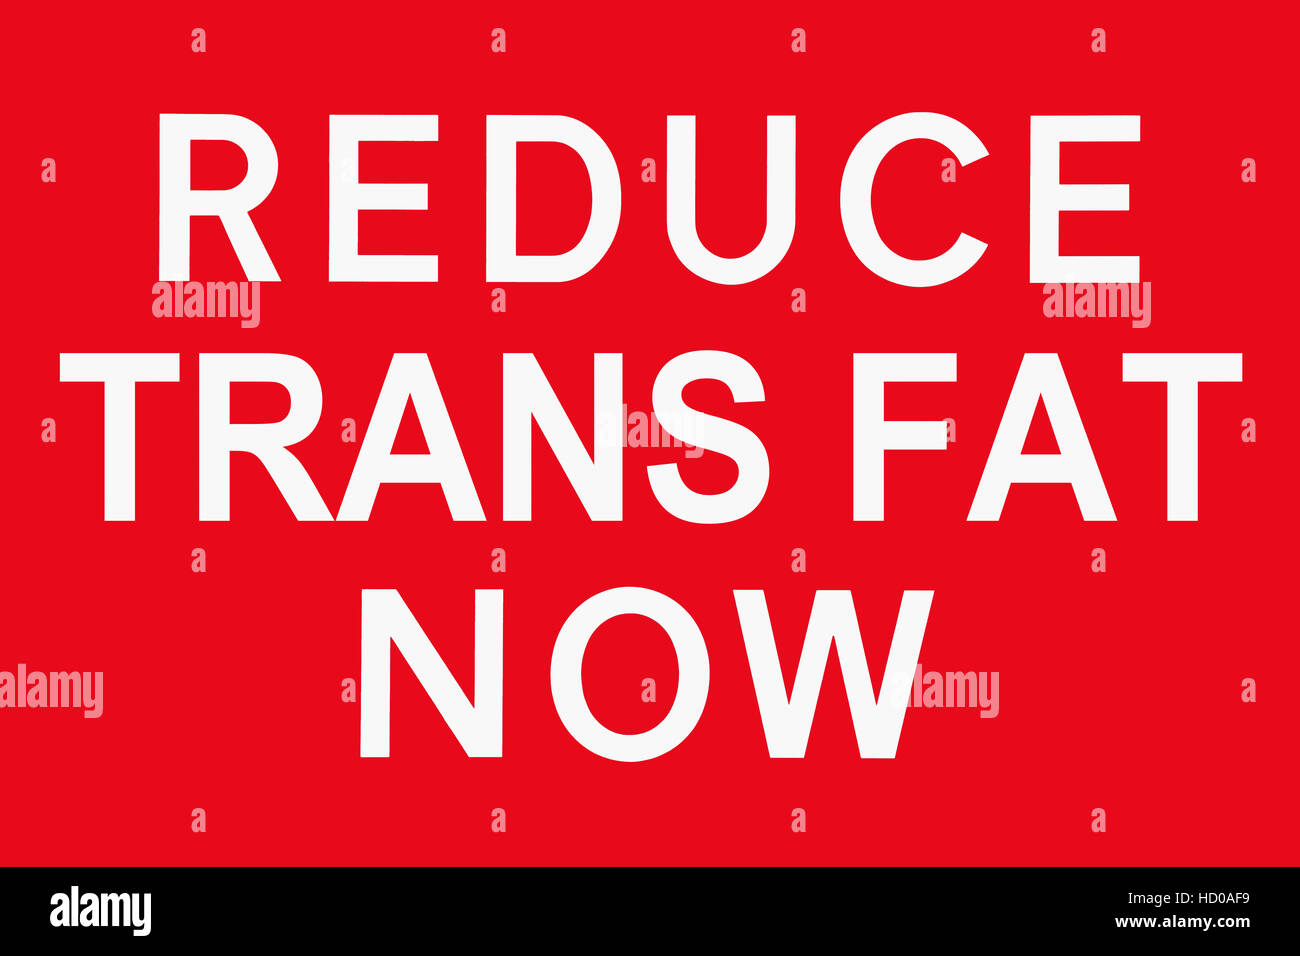 Segno bianco e rosso ridurre i grassi trans ora, concetto simbolo per i rischi per la salute di mangiare un sacco di fast-food Foto Stock